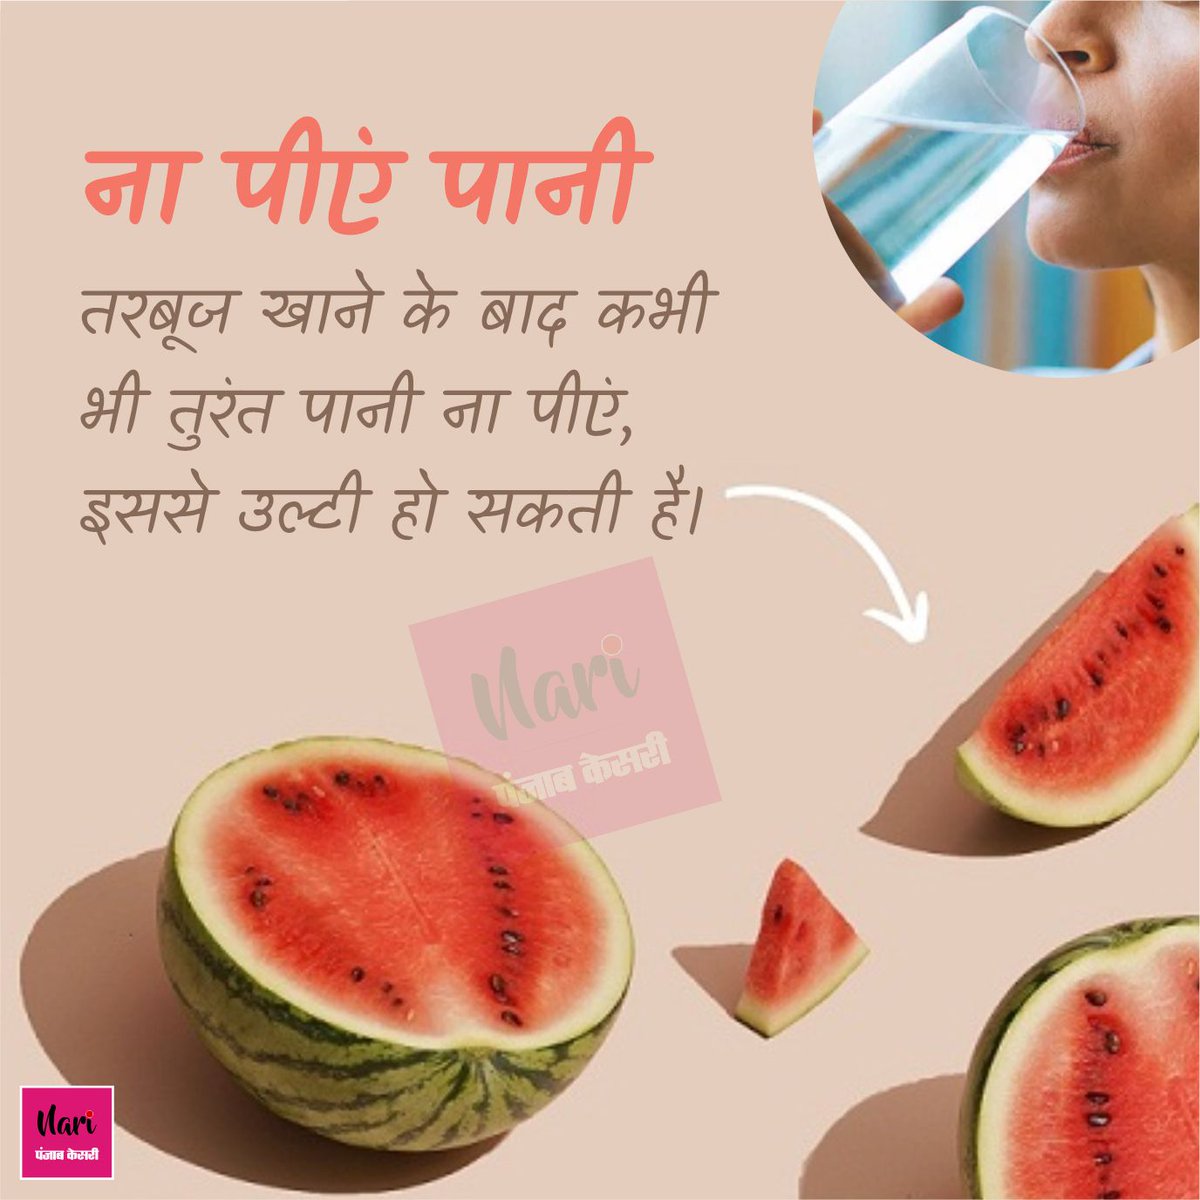 तरबूज खाने से पहले जान लें ये बातें
#Watermelon #watermelonbenefits #Summerfruit #watermelontips #howtoeatwatermelon #Healthtips #Healthcare